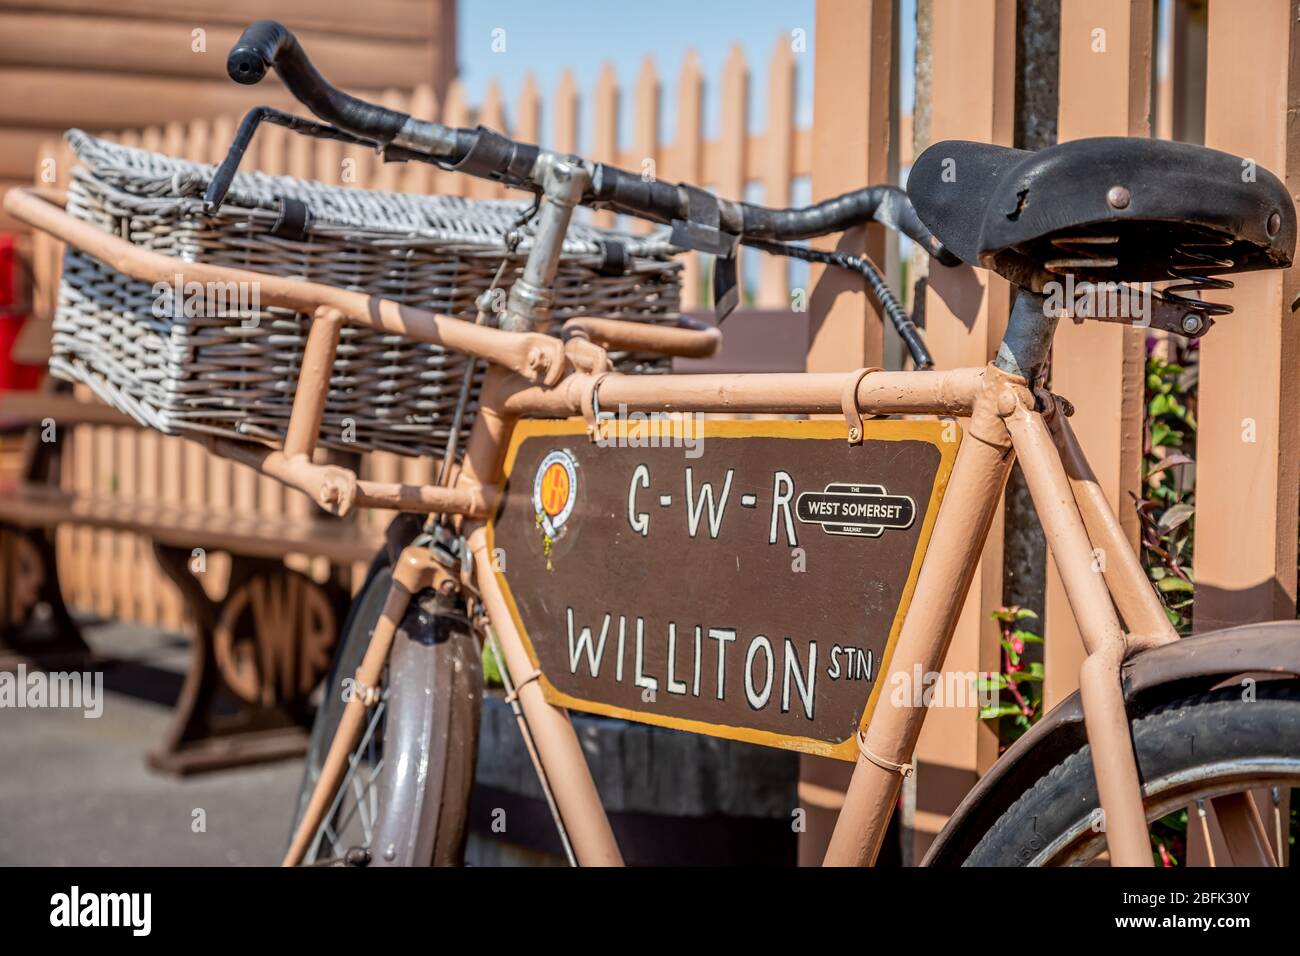 GWR Williton Bike si trova alla stazione Williton sulla West Somerset Railway, Somerset, Inghilterra, Regno Unito Foto Stock